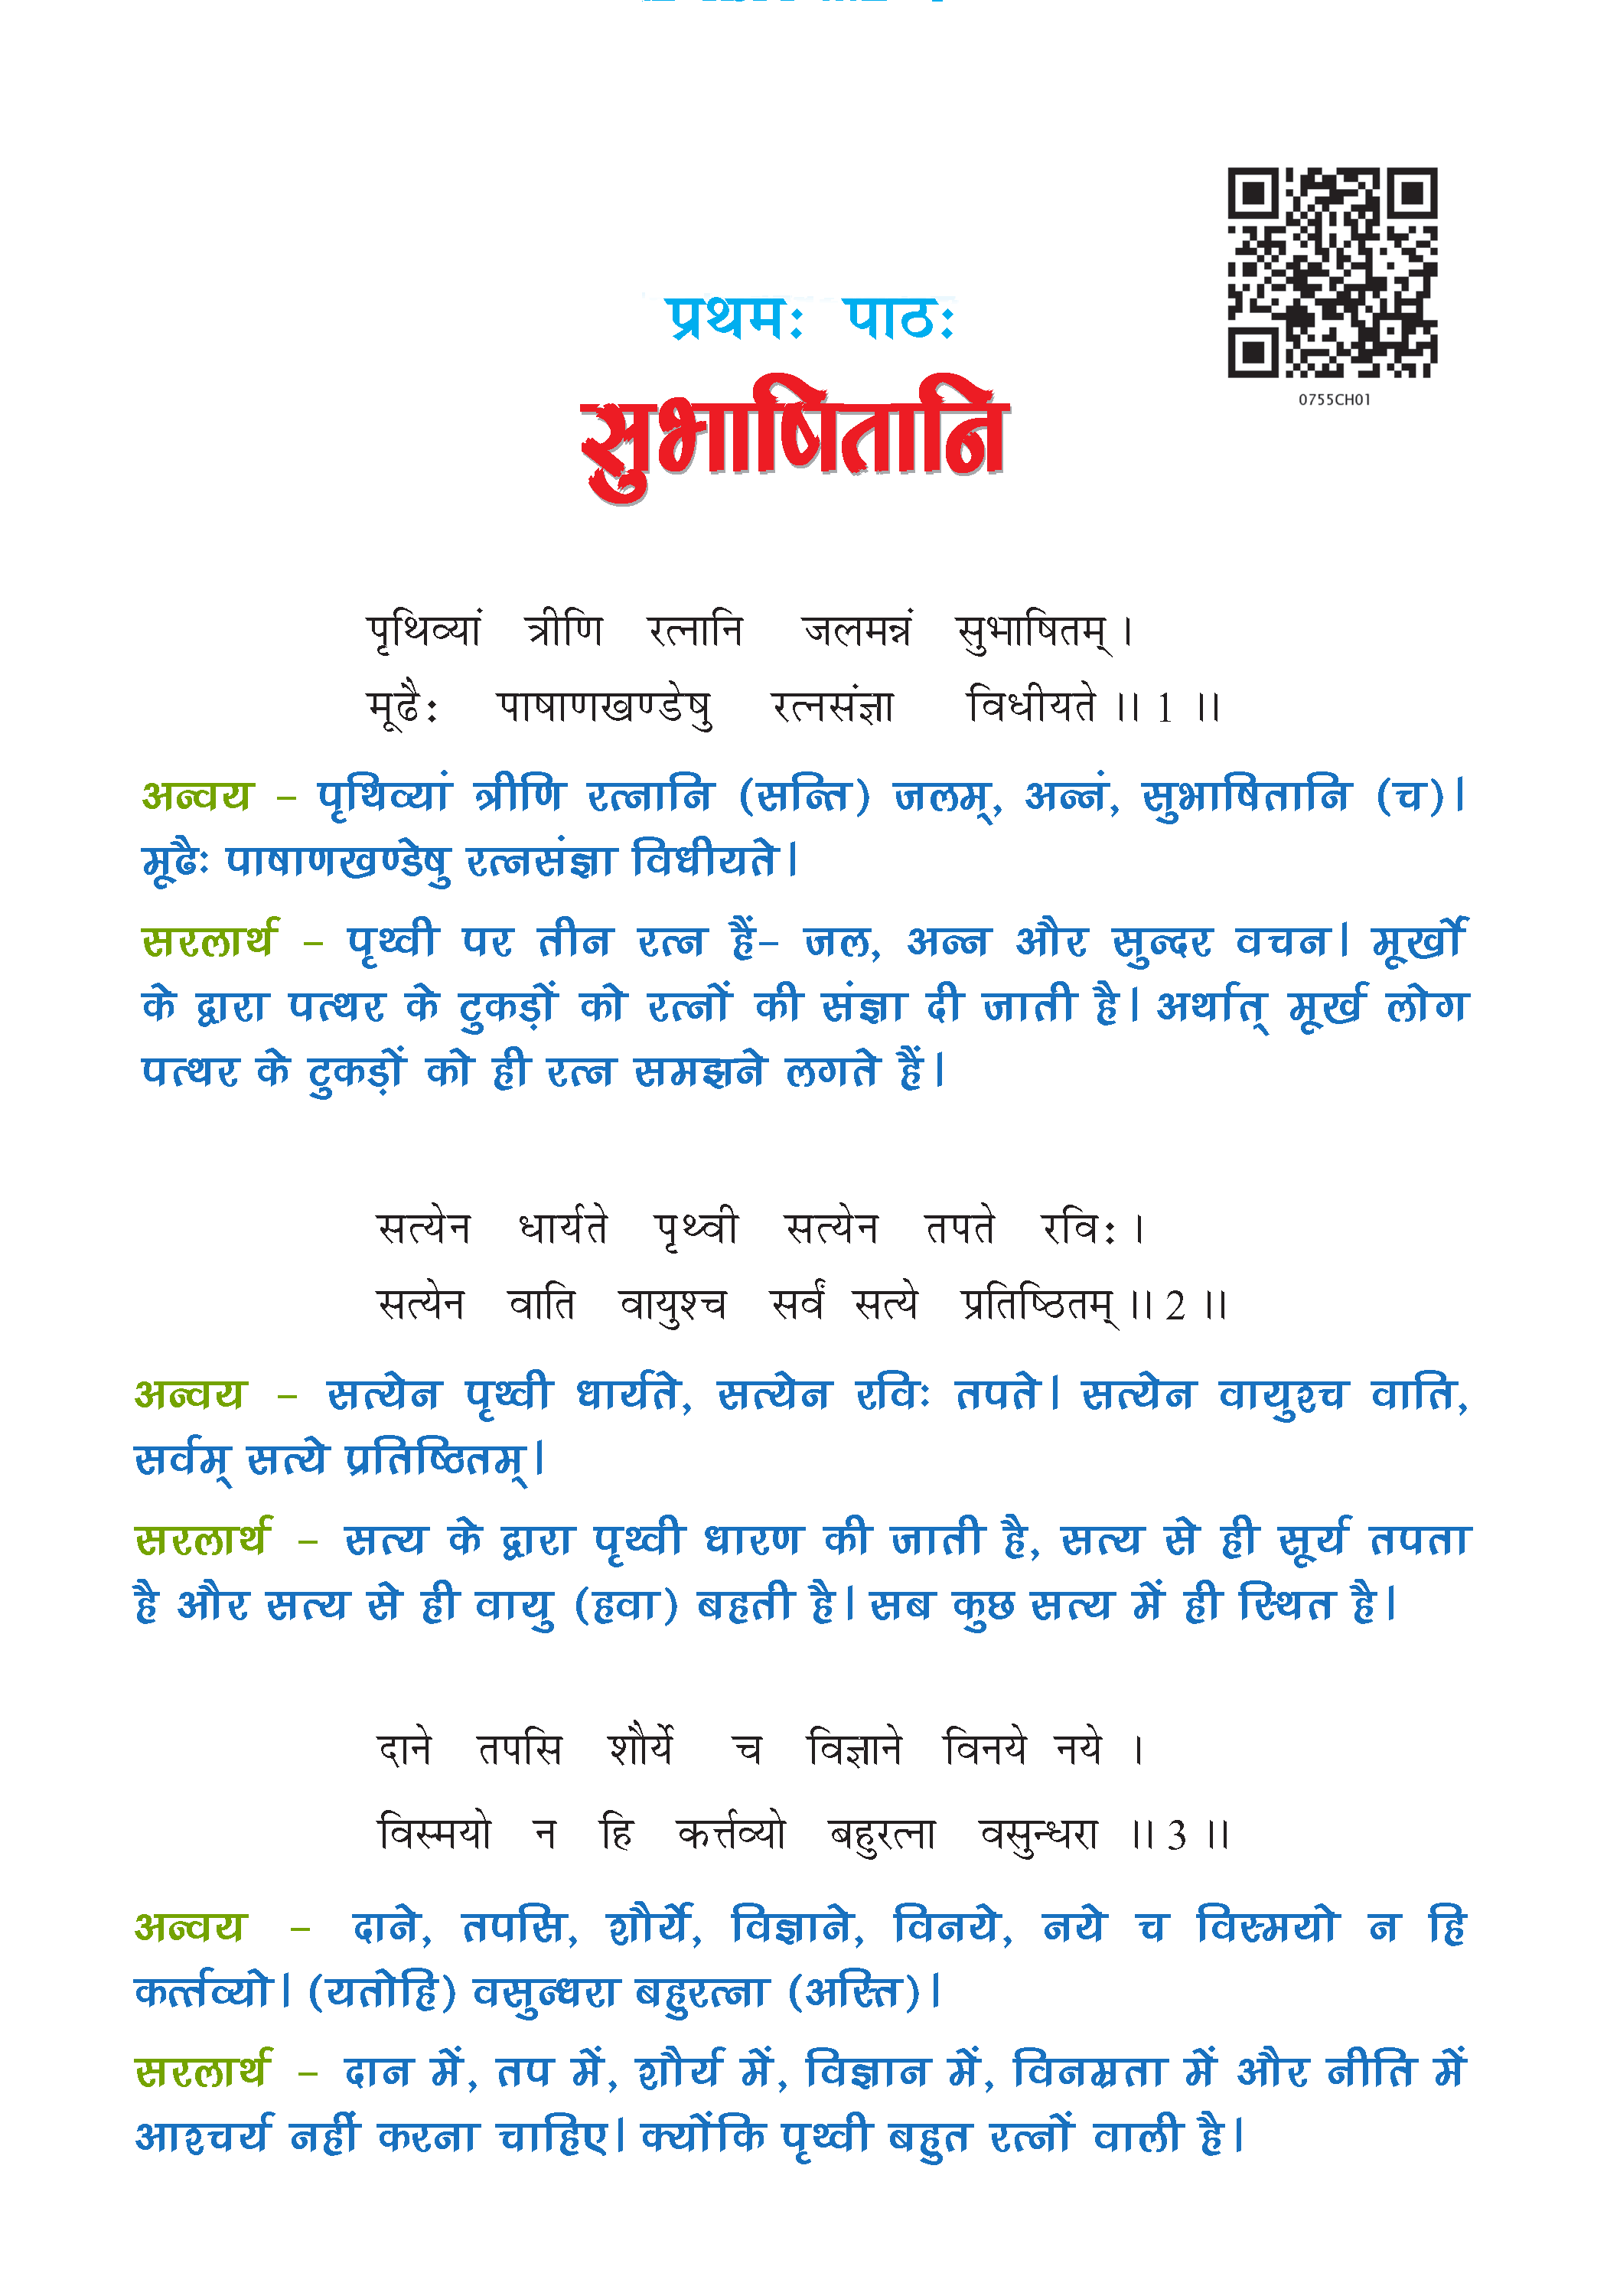 NCERT Solution For Class 7 Sanskrit Chapter 1 part 1